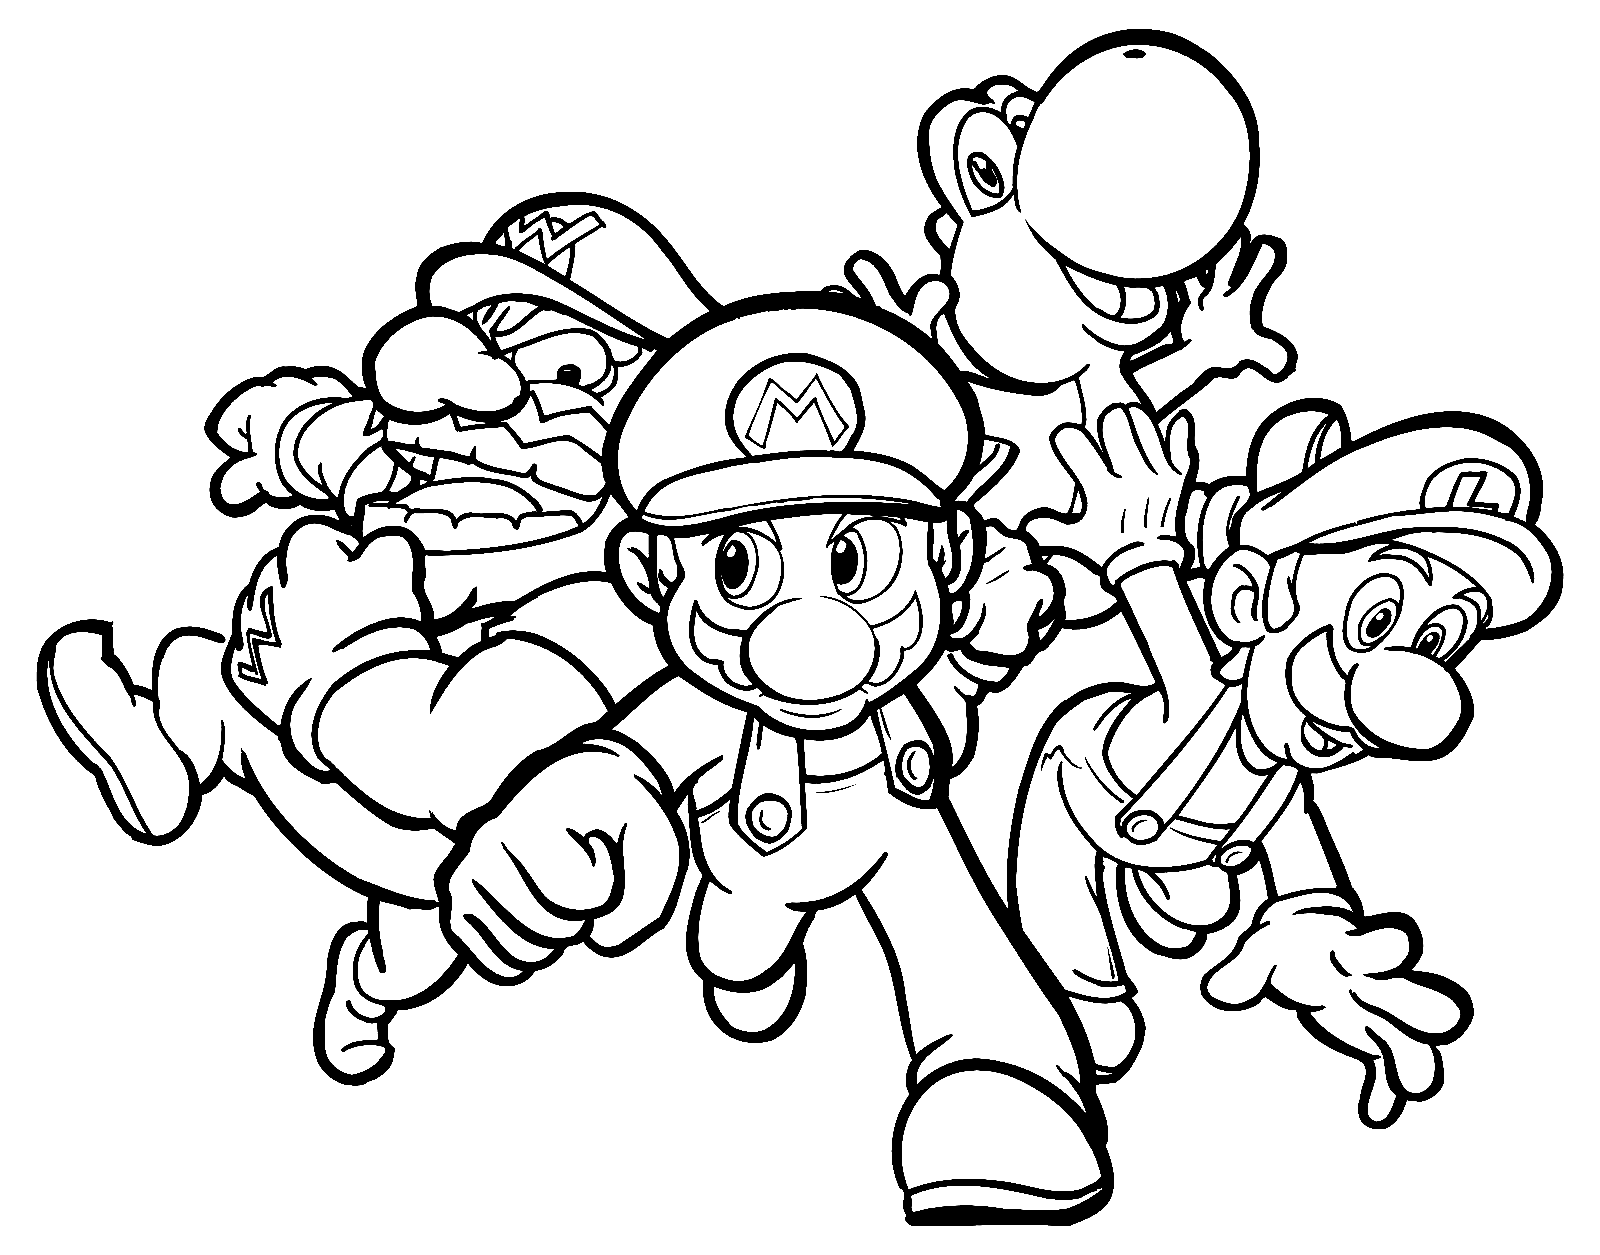 Team Mario Party Coloring Page